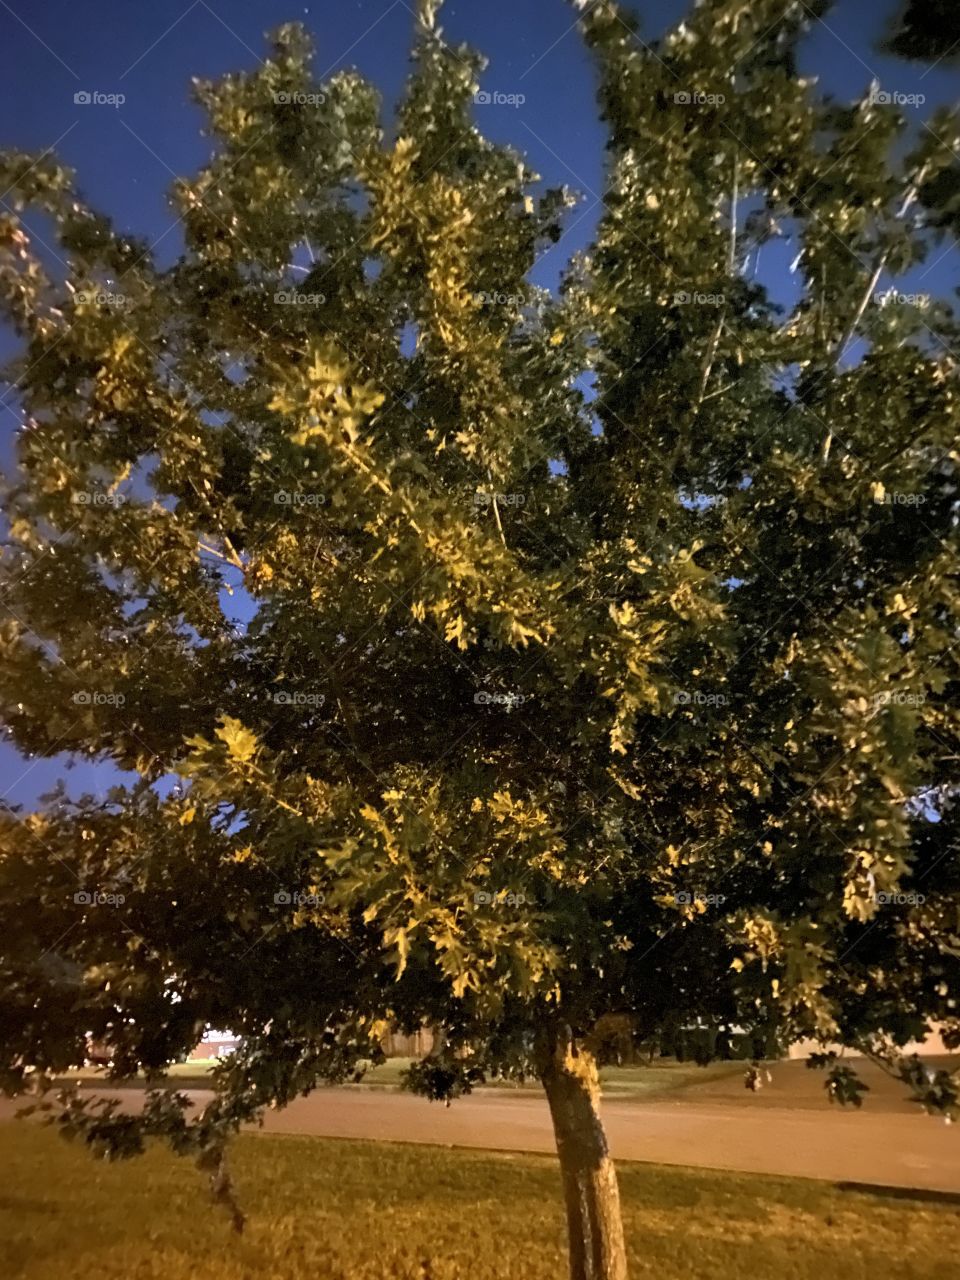 Trees at night